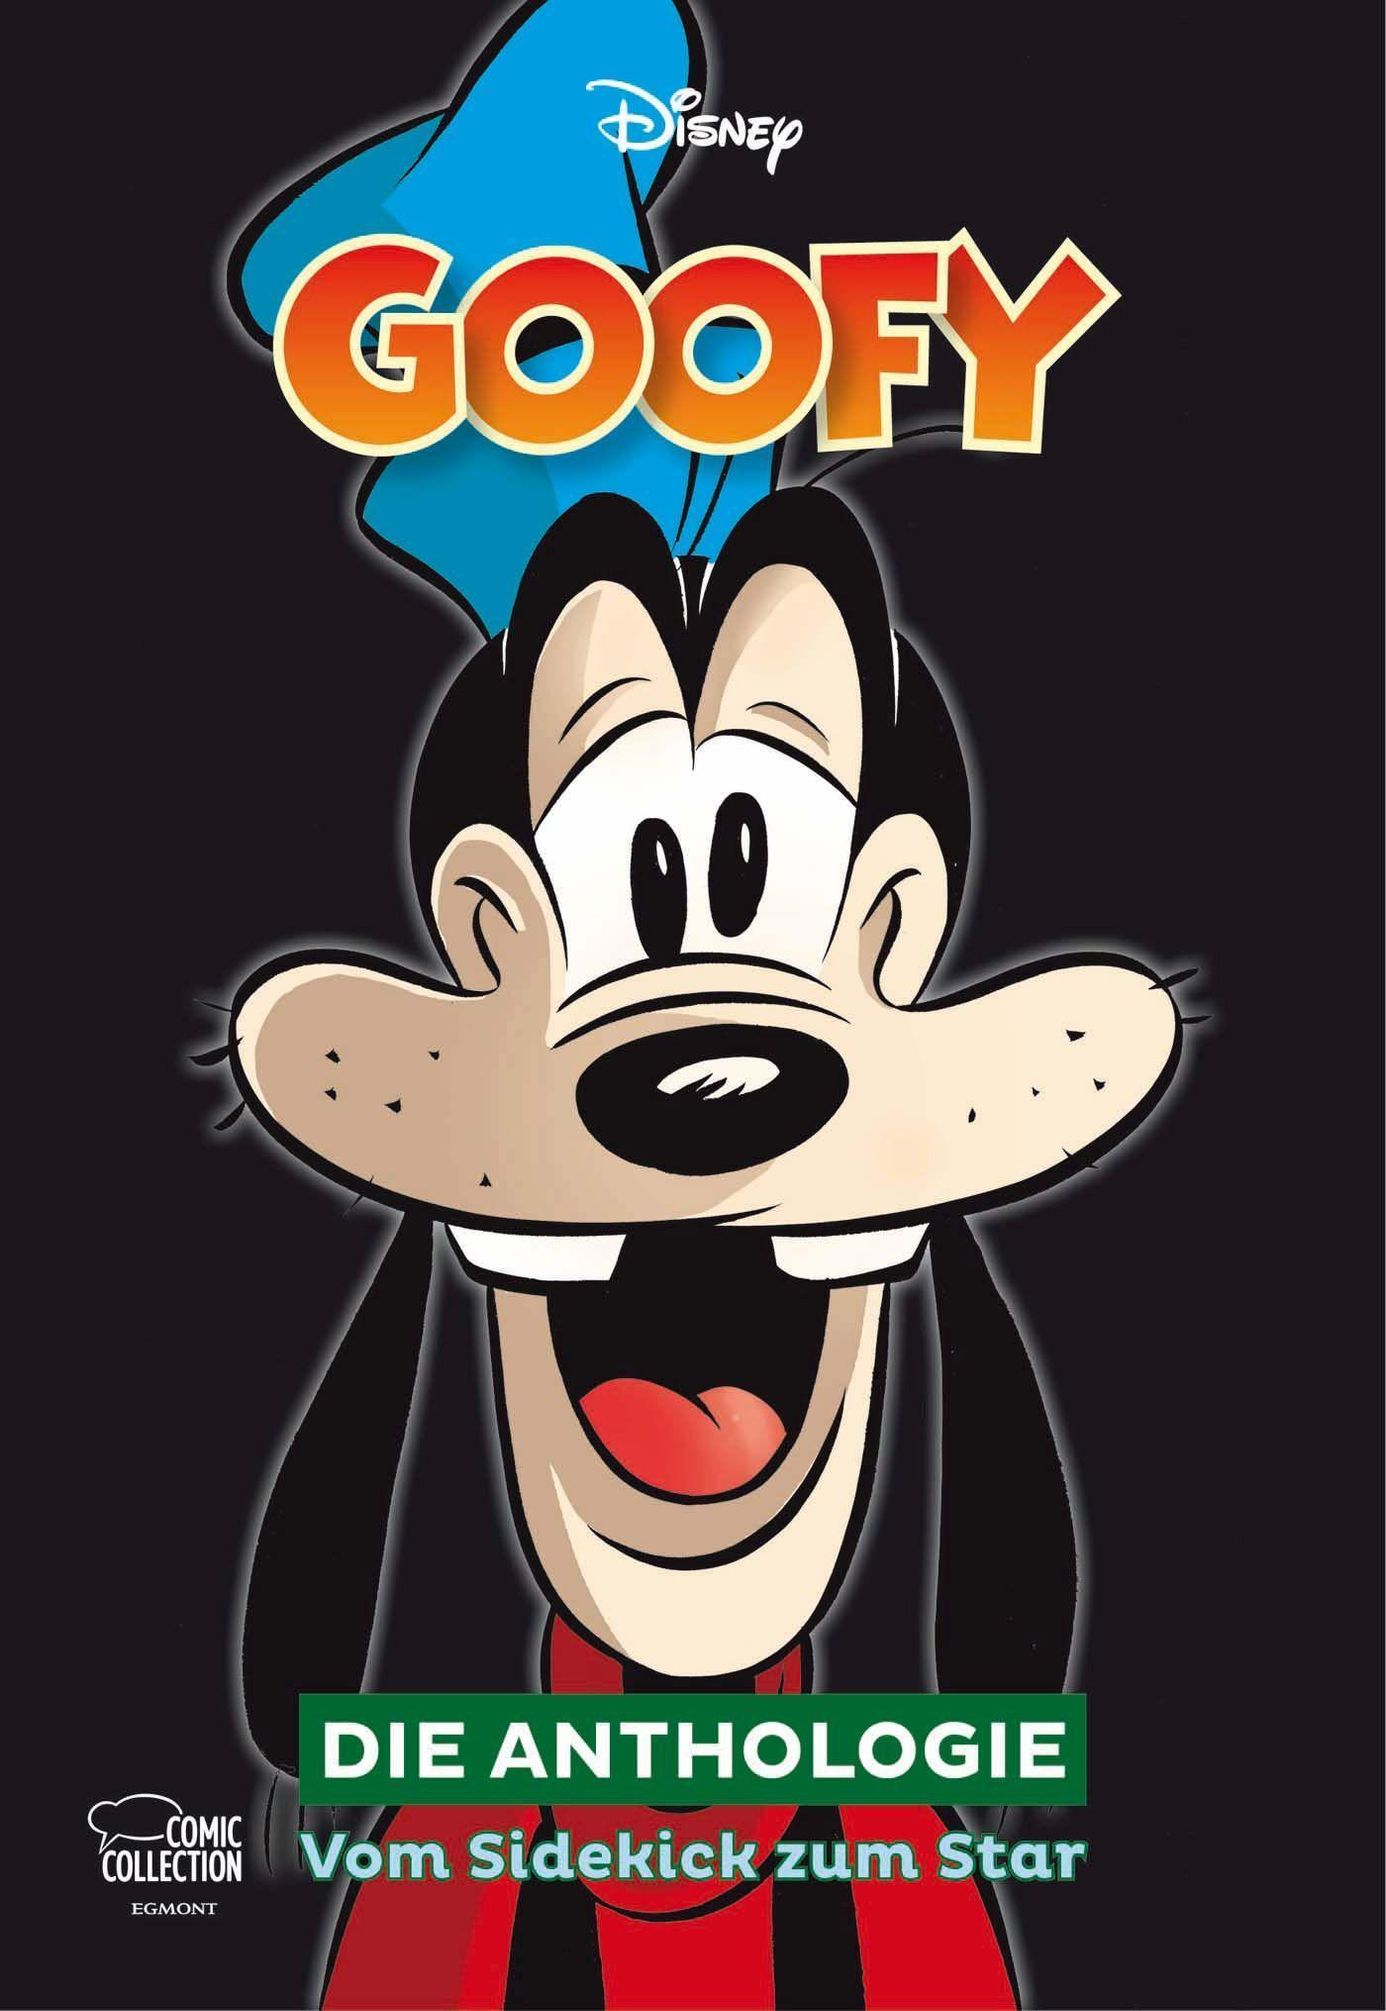 Goofy - Die Anthologie Buch von Walt Disney versandkostenfrei bestellen